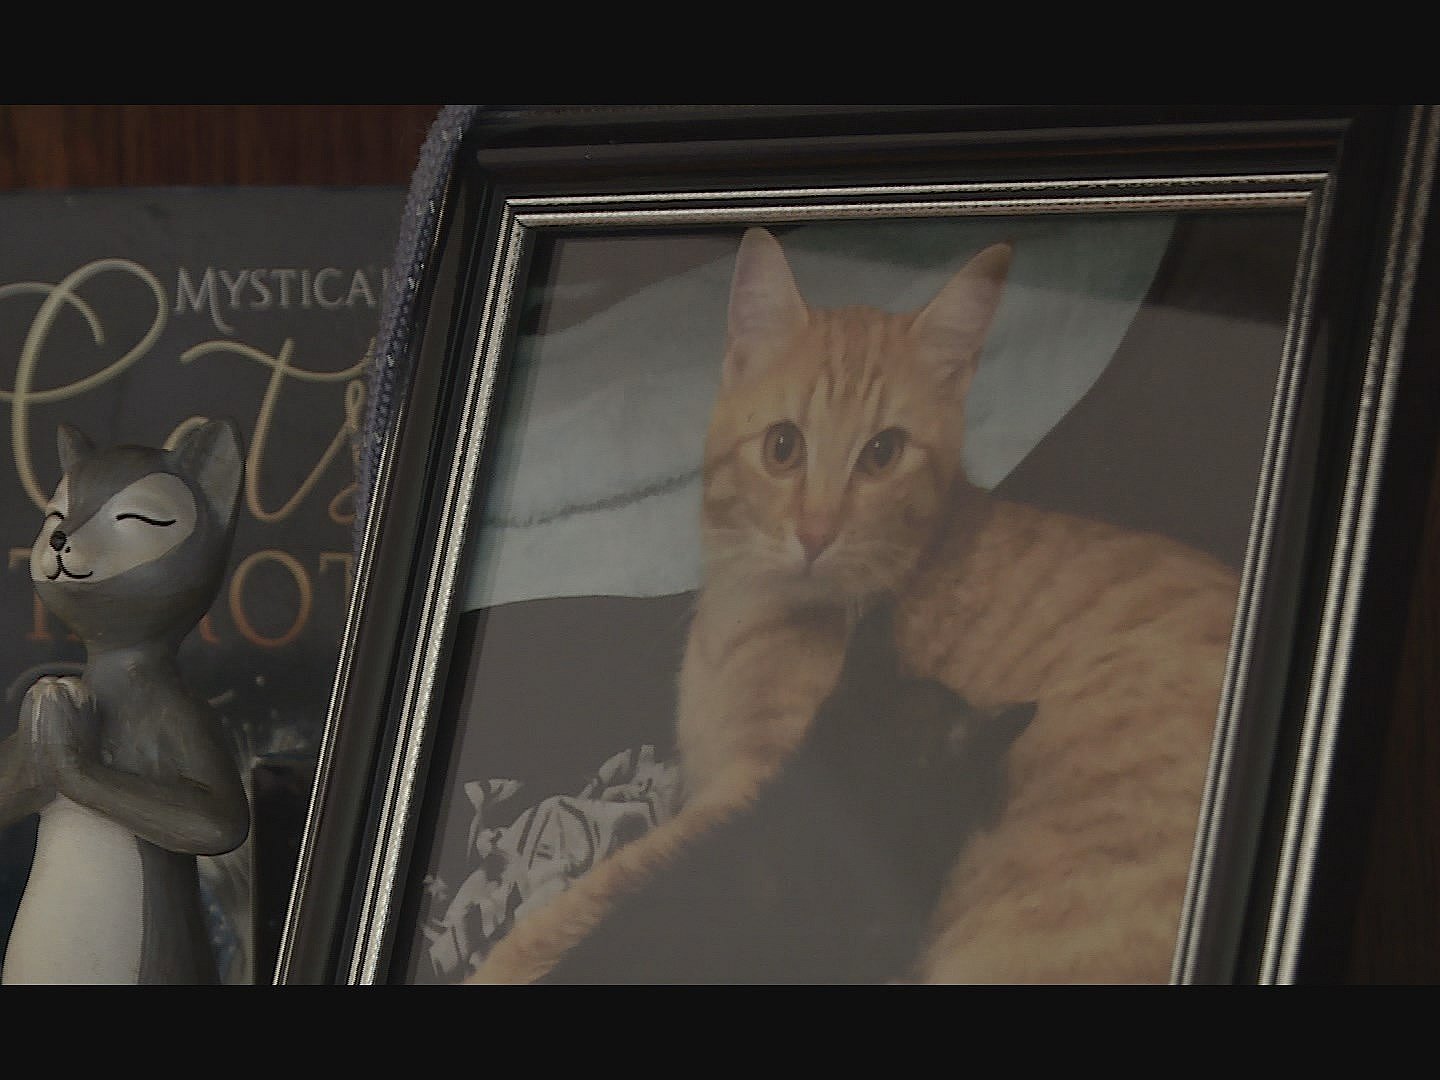 Om halsen asken fra yndlingskat - katte er hans liv | TV 2 Kosmopol